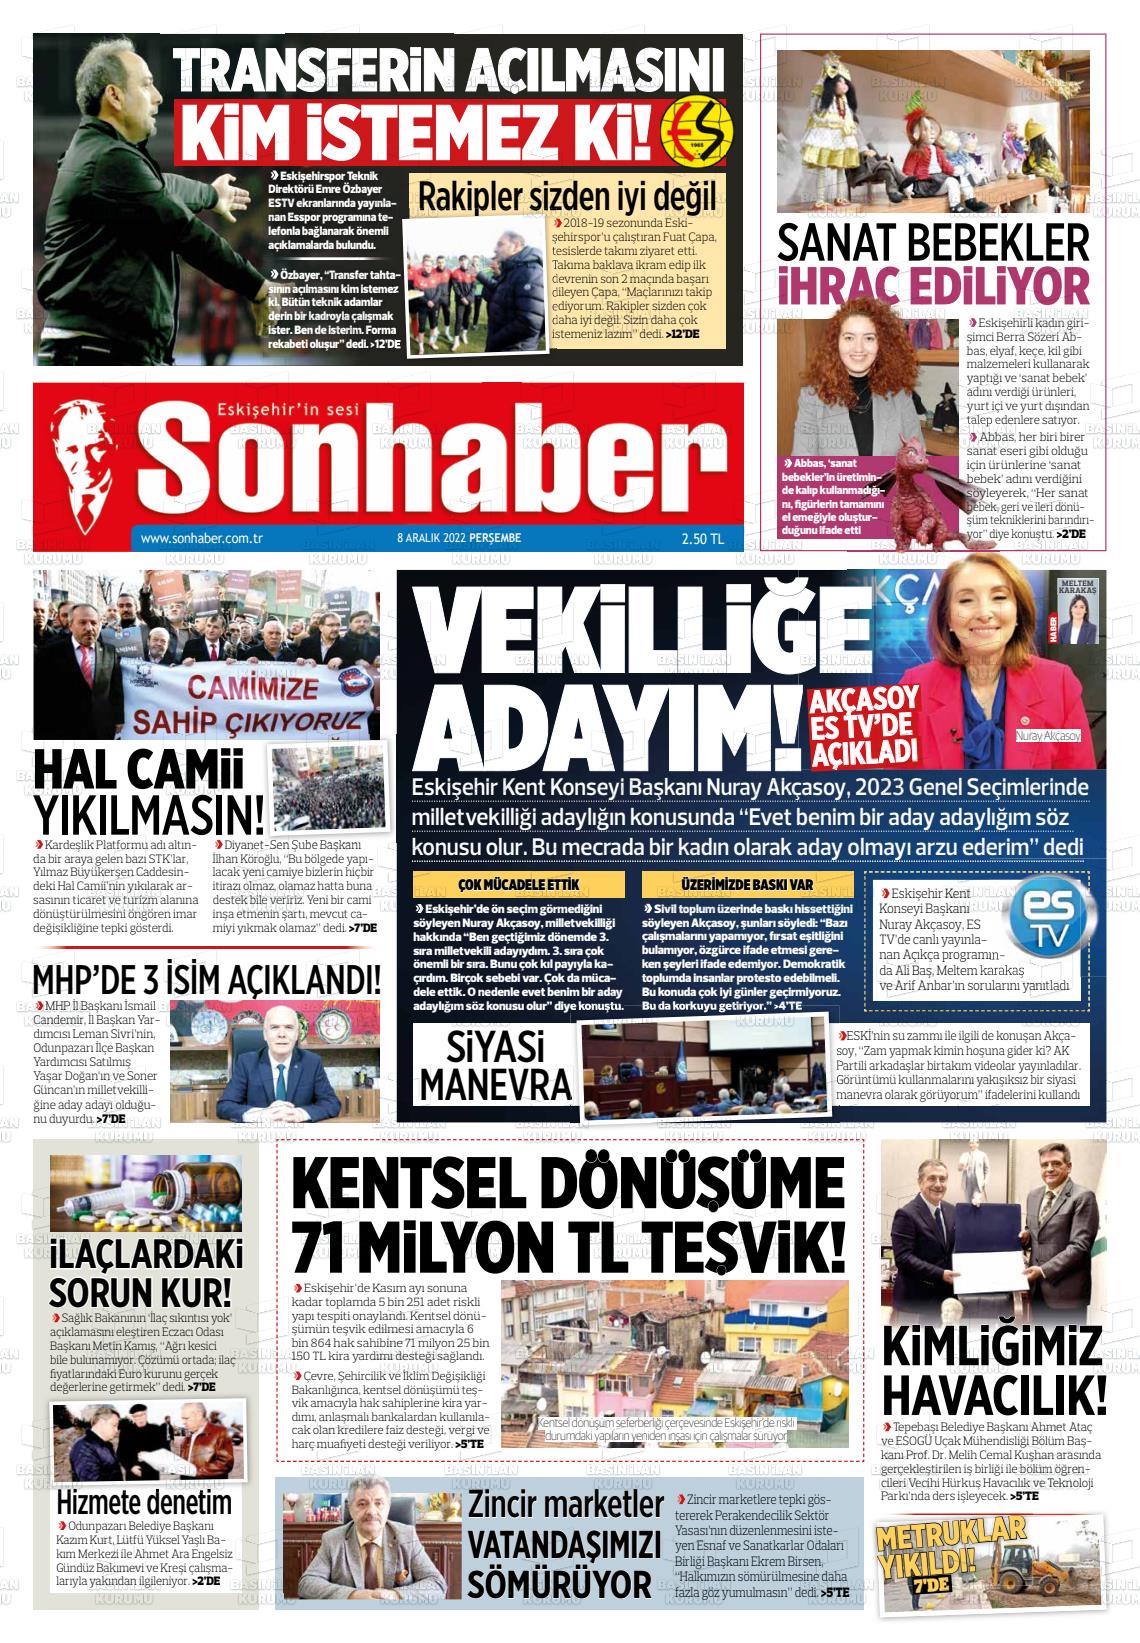 08 Aralık 2022 Eskişehir Son Haber Gazete Manşeti